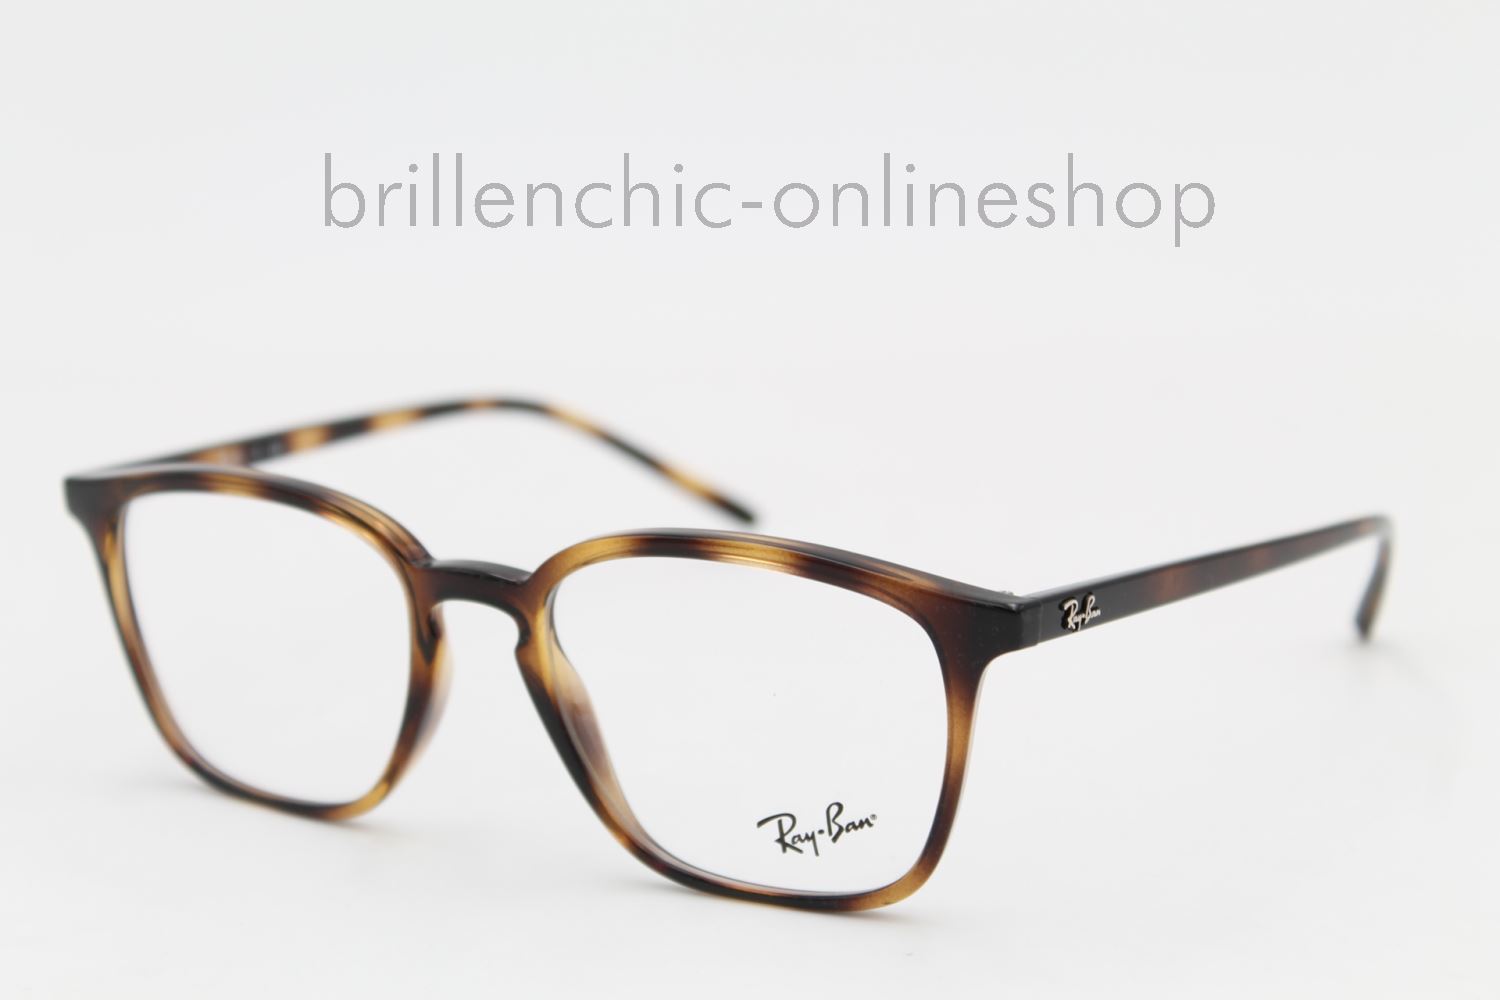 Brillenchic - onlineshop Berlin Ihr starker Partner für exklusive Brillen  online kaufen/Ray Ban RB 7185 2012 exklusiv im Brillenchic-Onlineshop